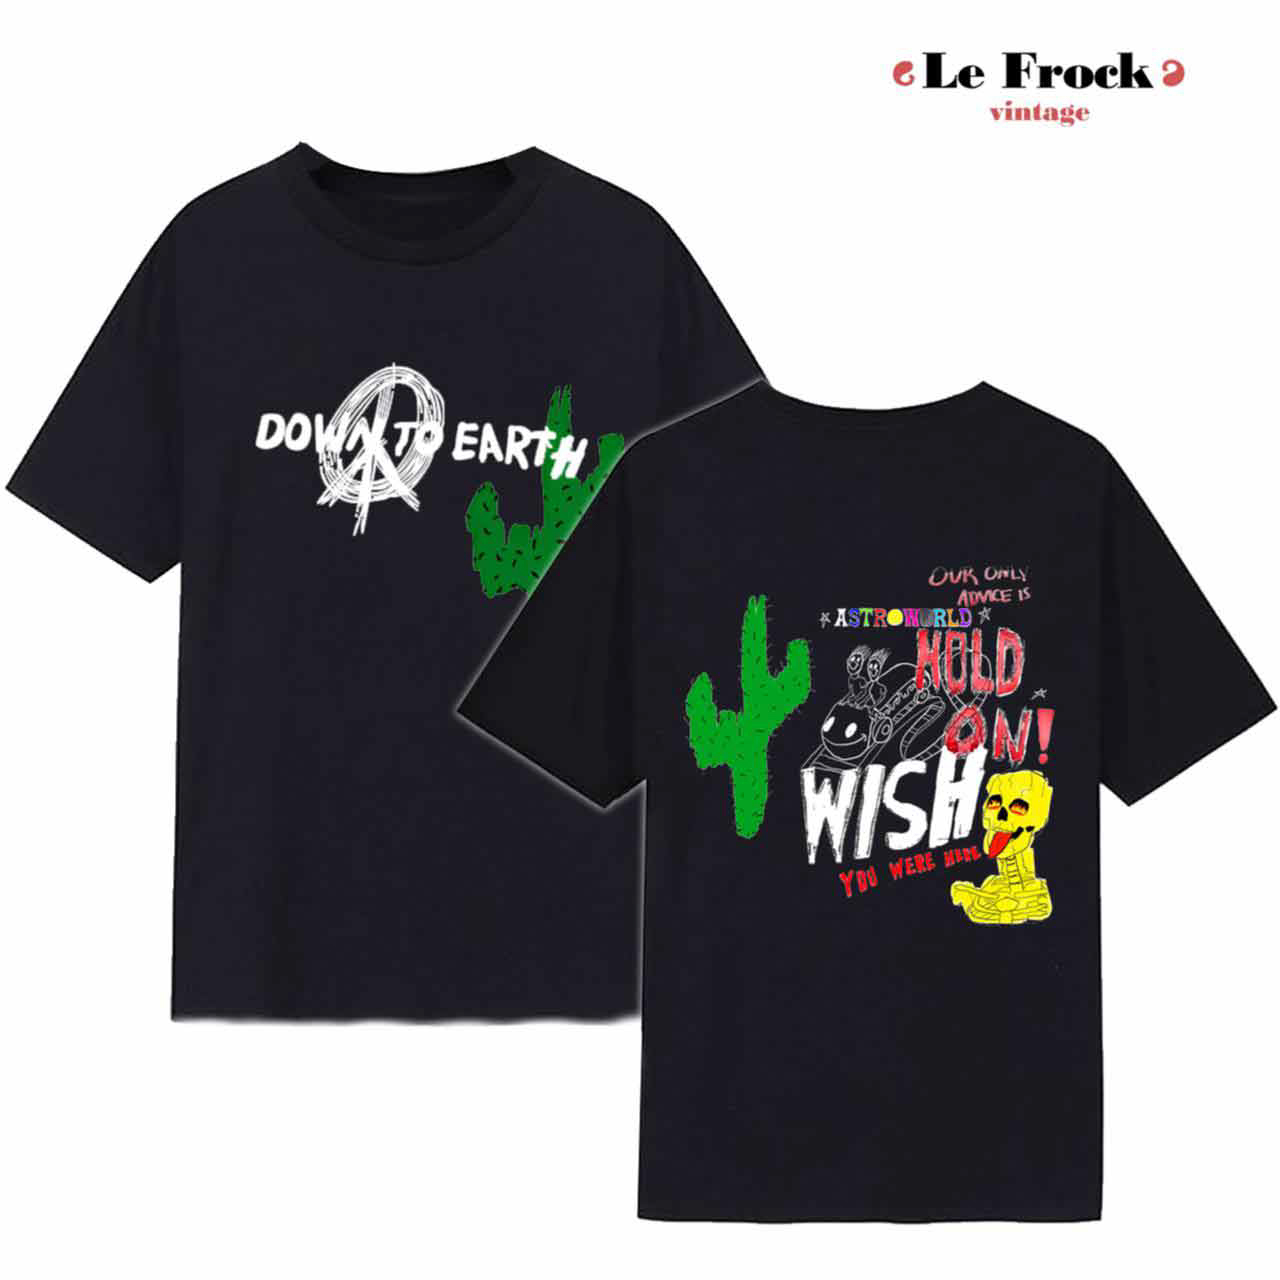 Travis Scott tshirt, Travis Scott Cactus Jack Astroworld Wish You